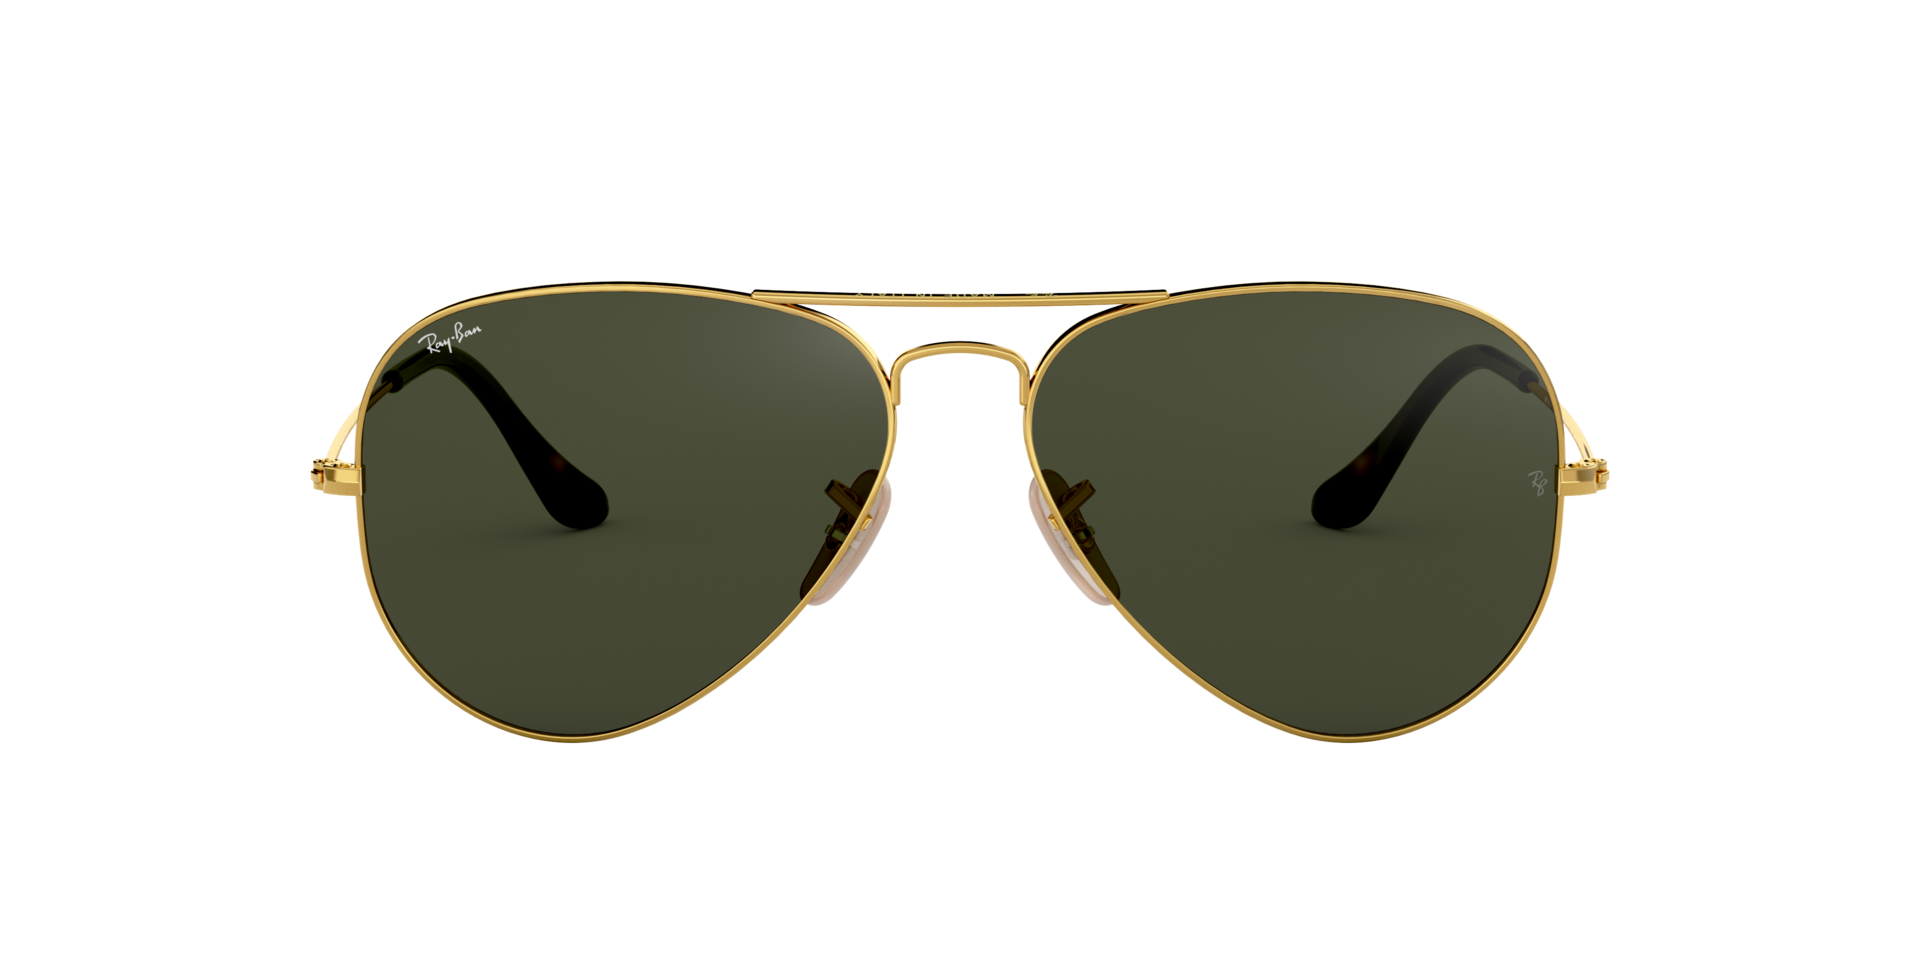 Ray Ban l 湯姆克魯斯同款-飛官框太陽眼鏡 經典綠/金